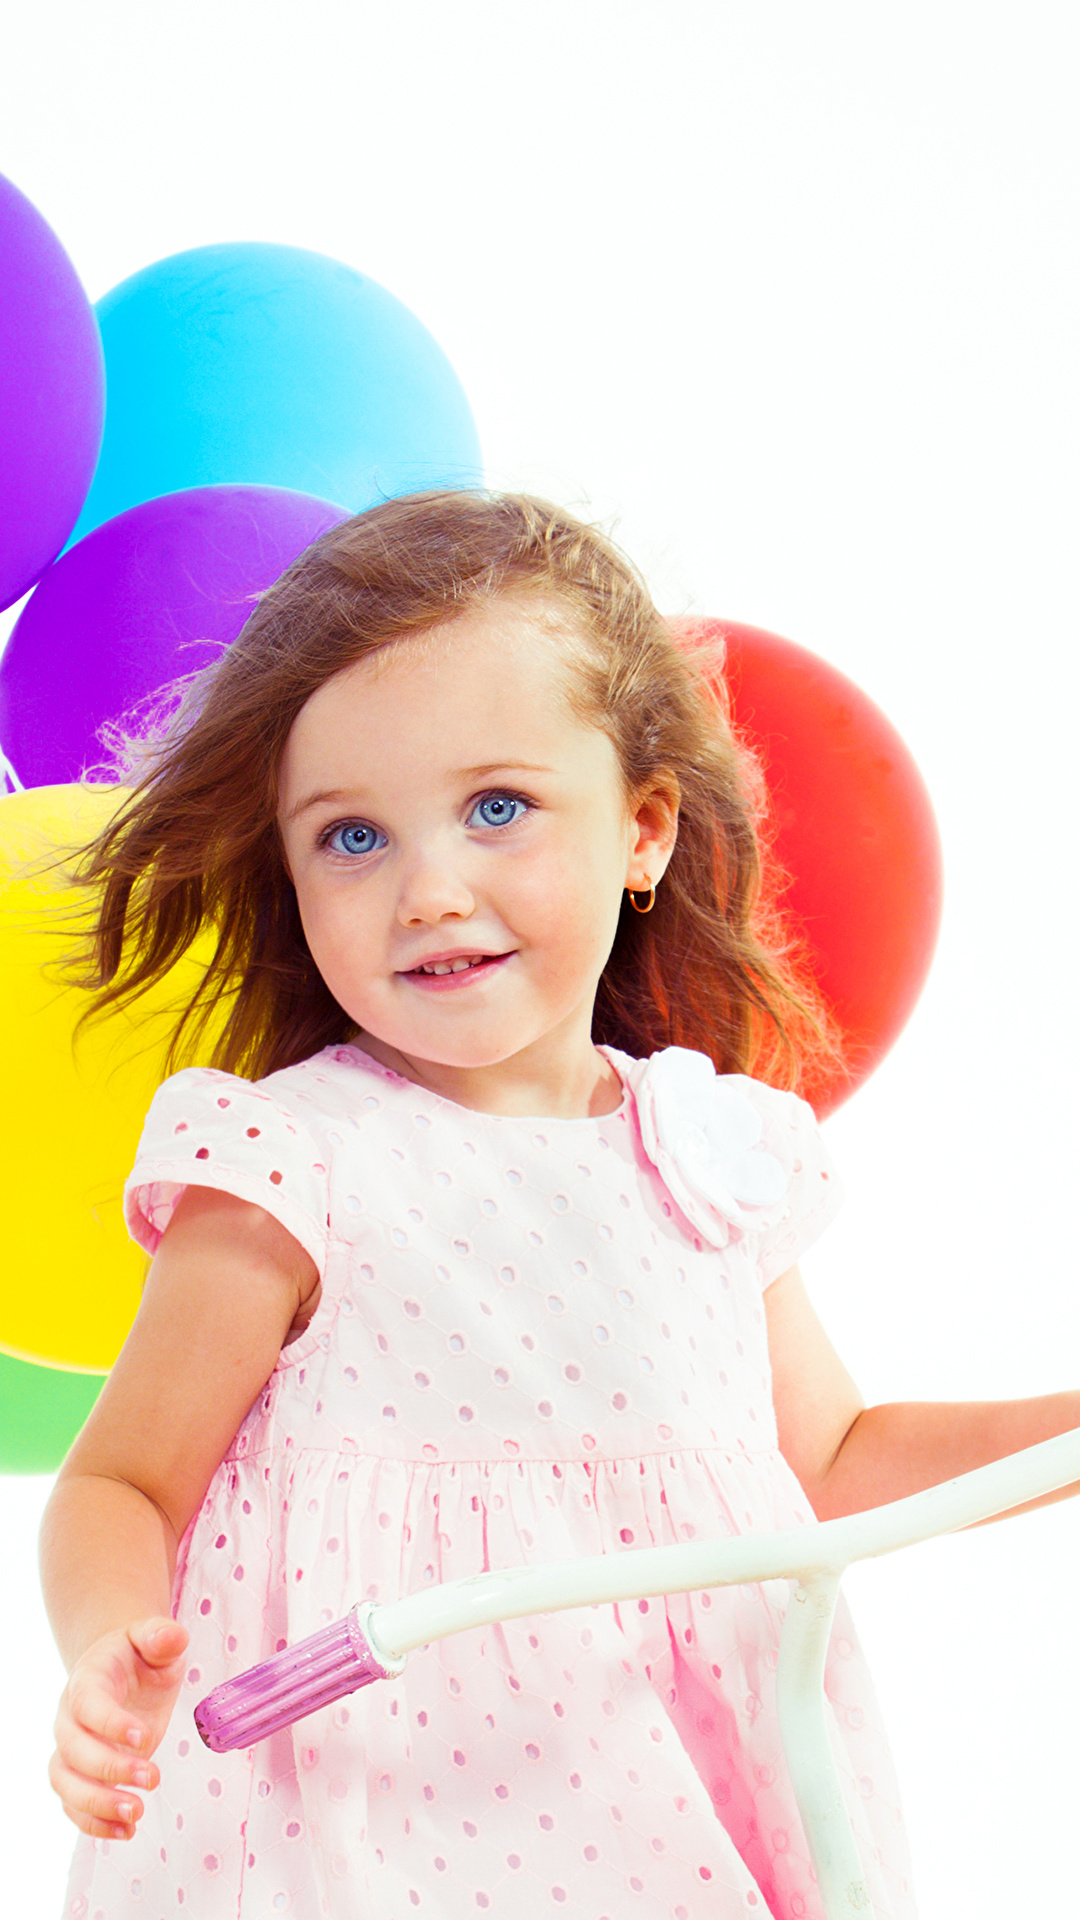 壁紙 1080x19 白背景 小さな女の子 微笑み ボール 美しい 可愛い 子供 ダウンロード 写真